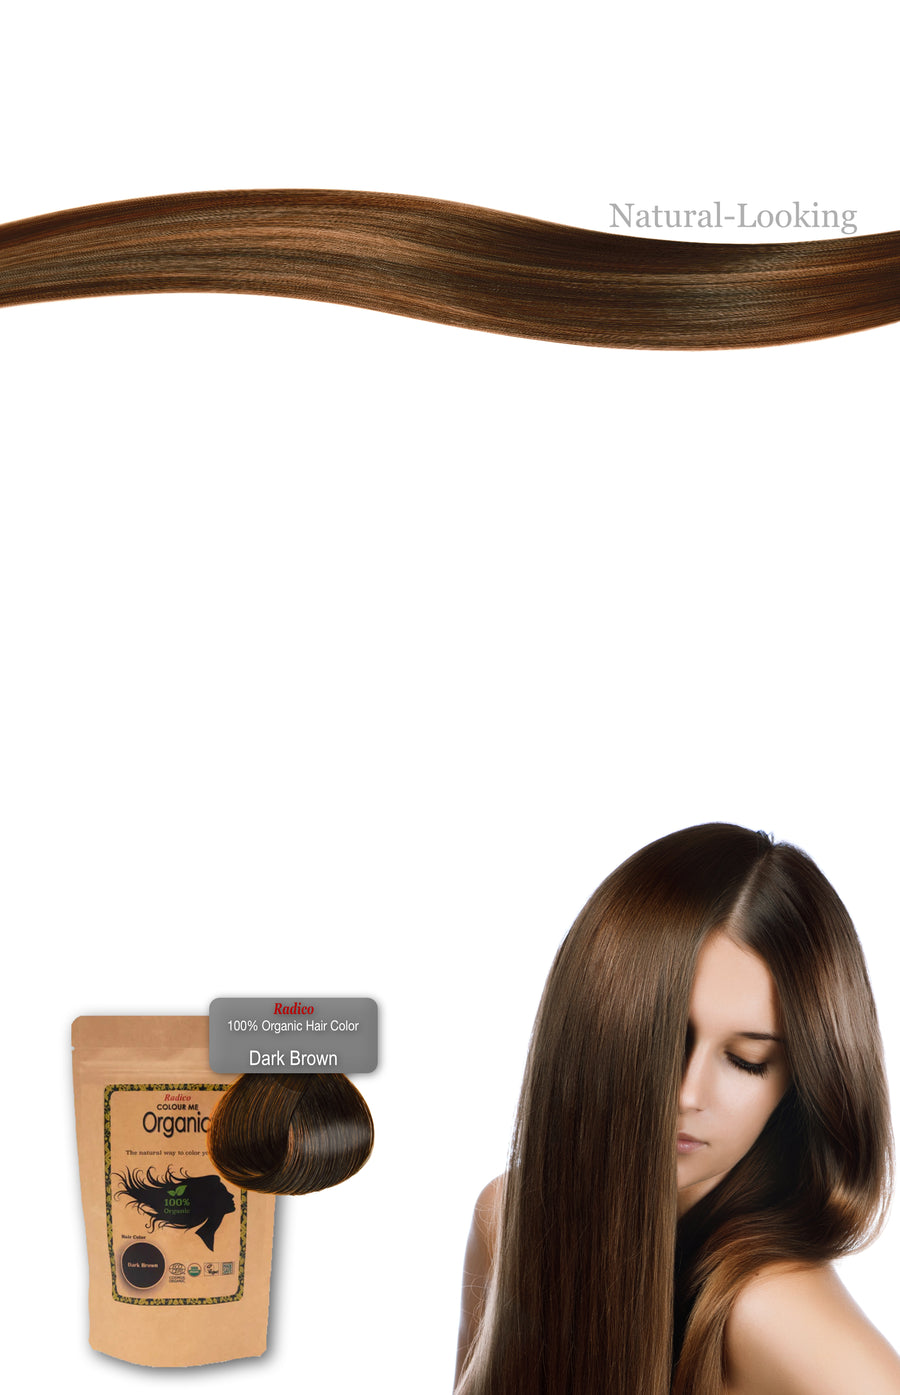 radico 100% Organic Hair Dye image